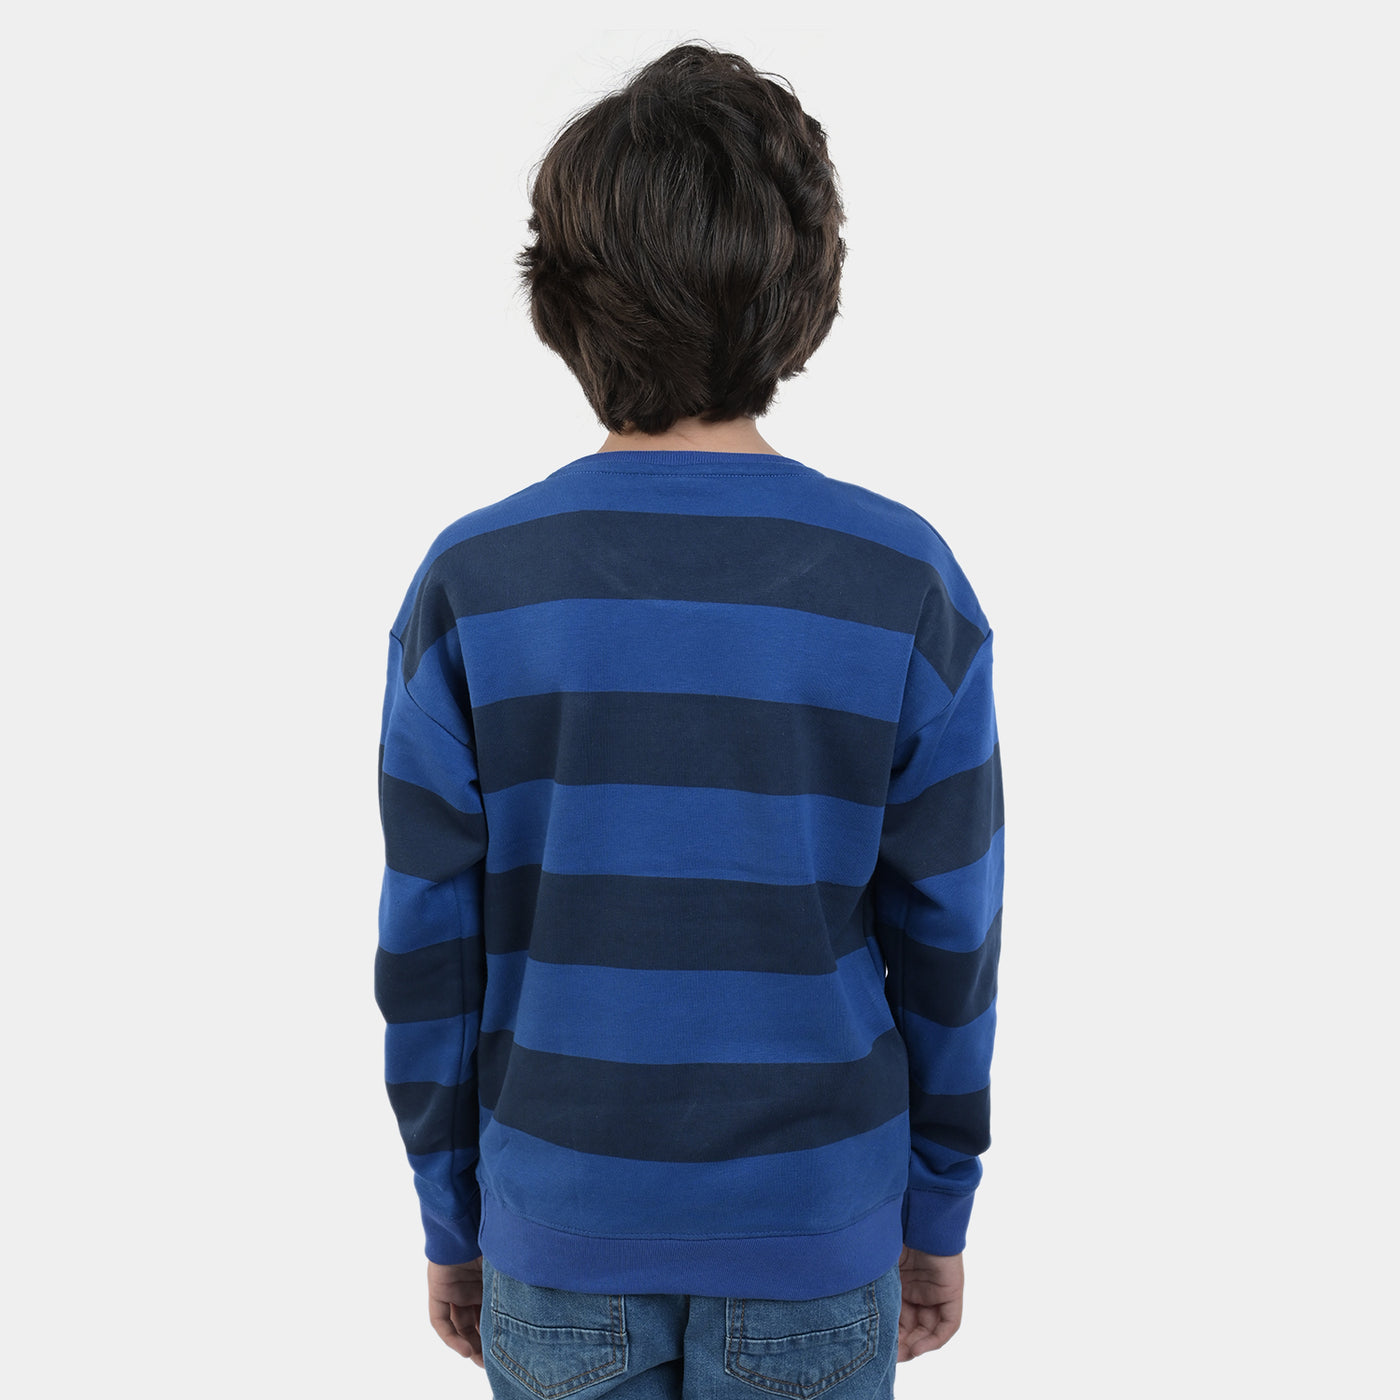 Boys Fleece Sweatshirt Hang On character-Blue